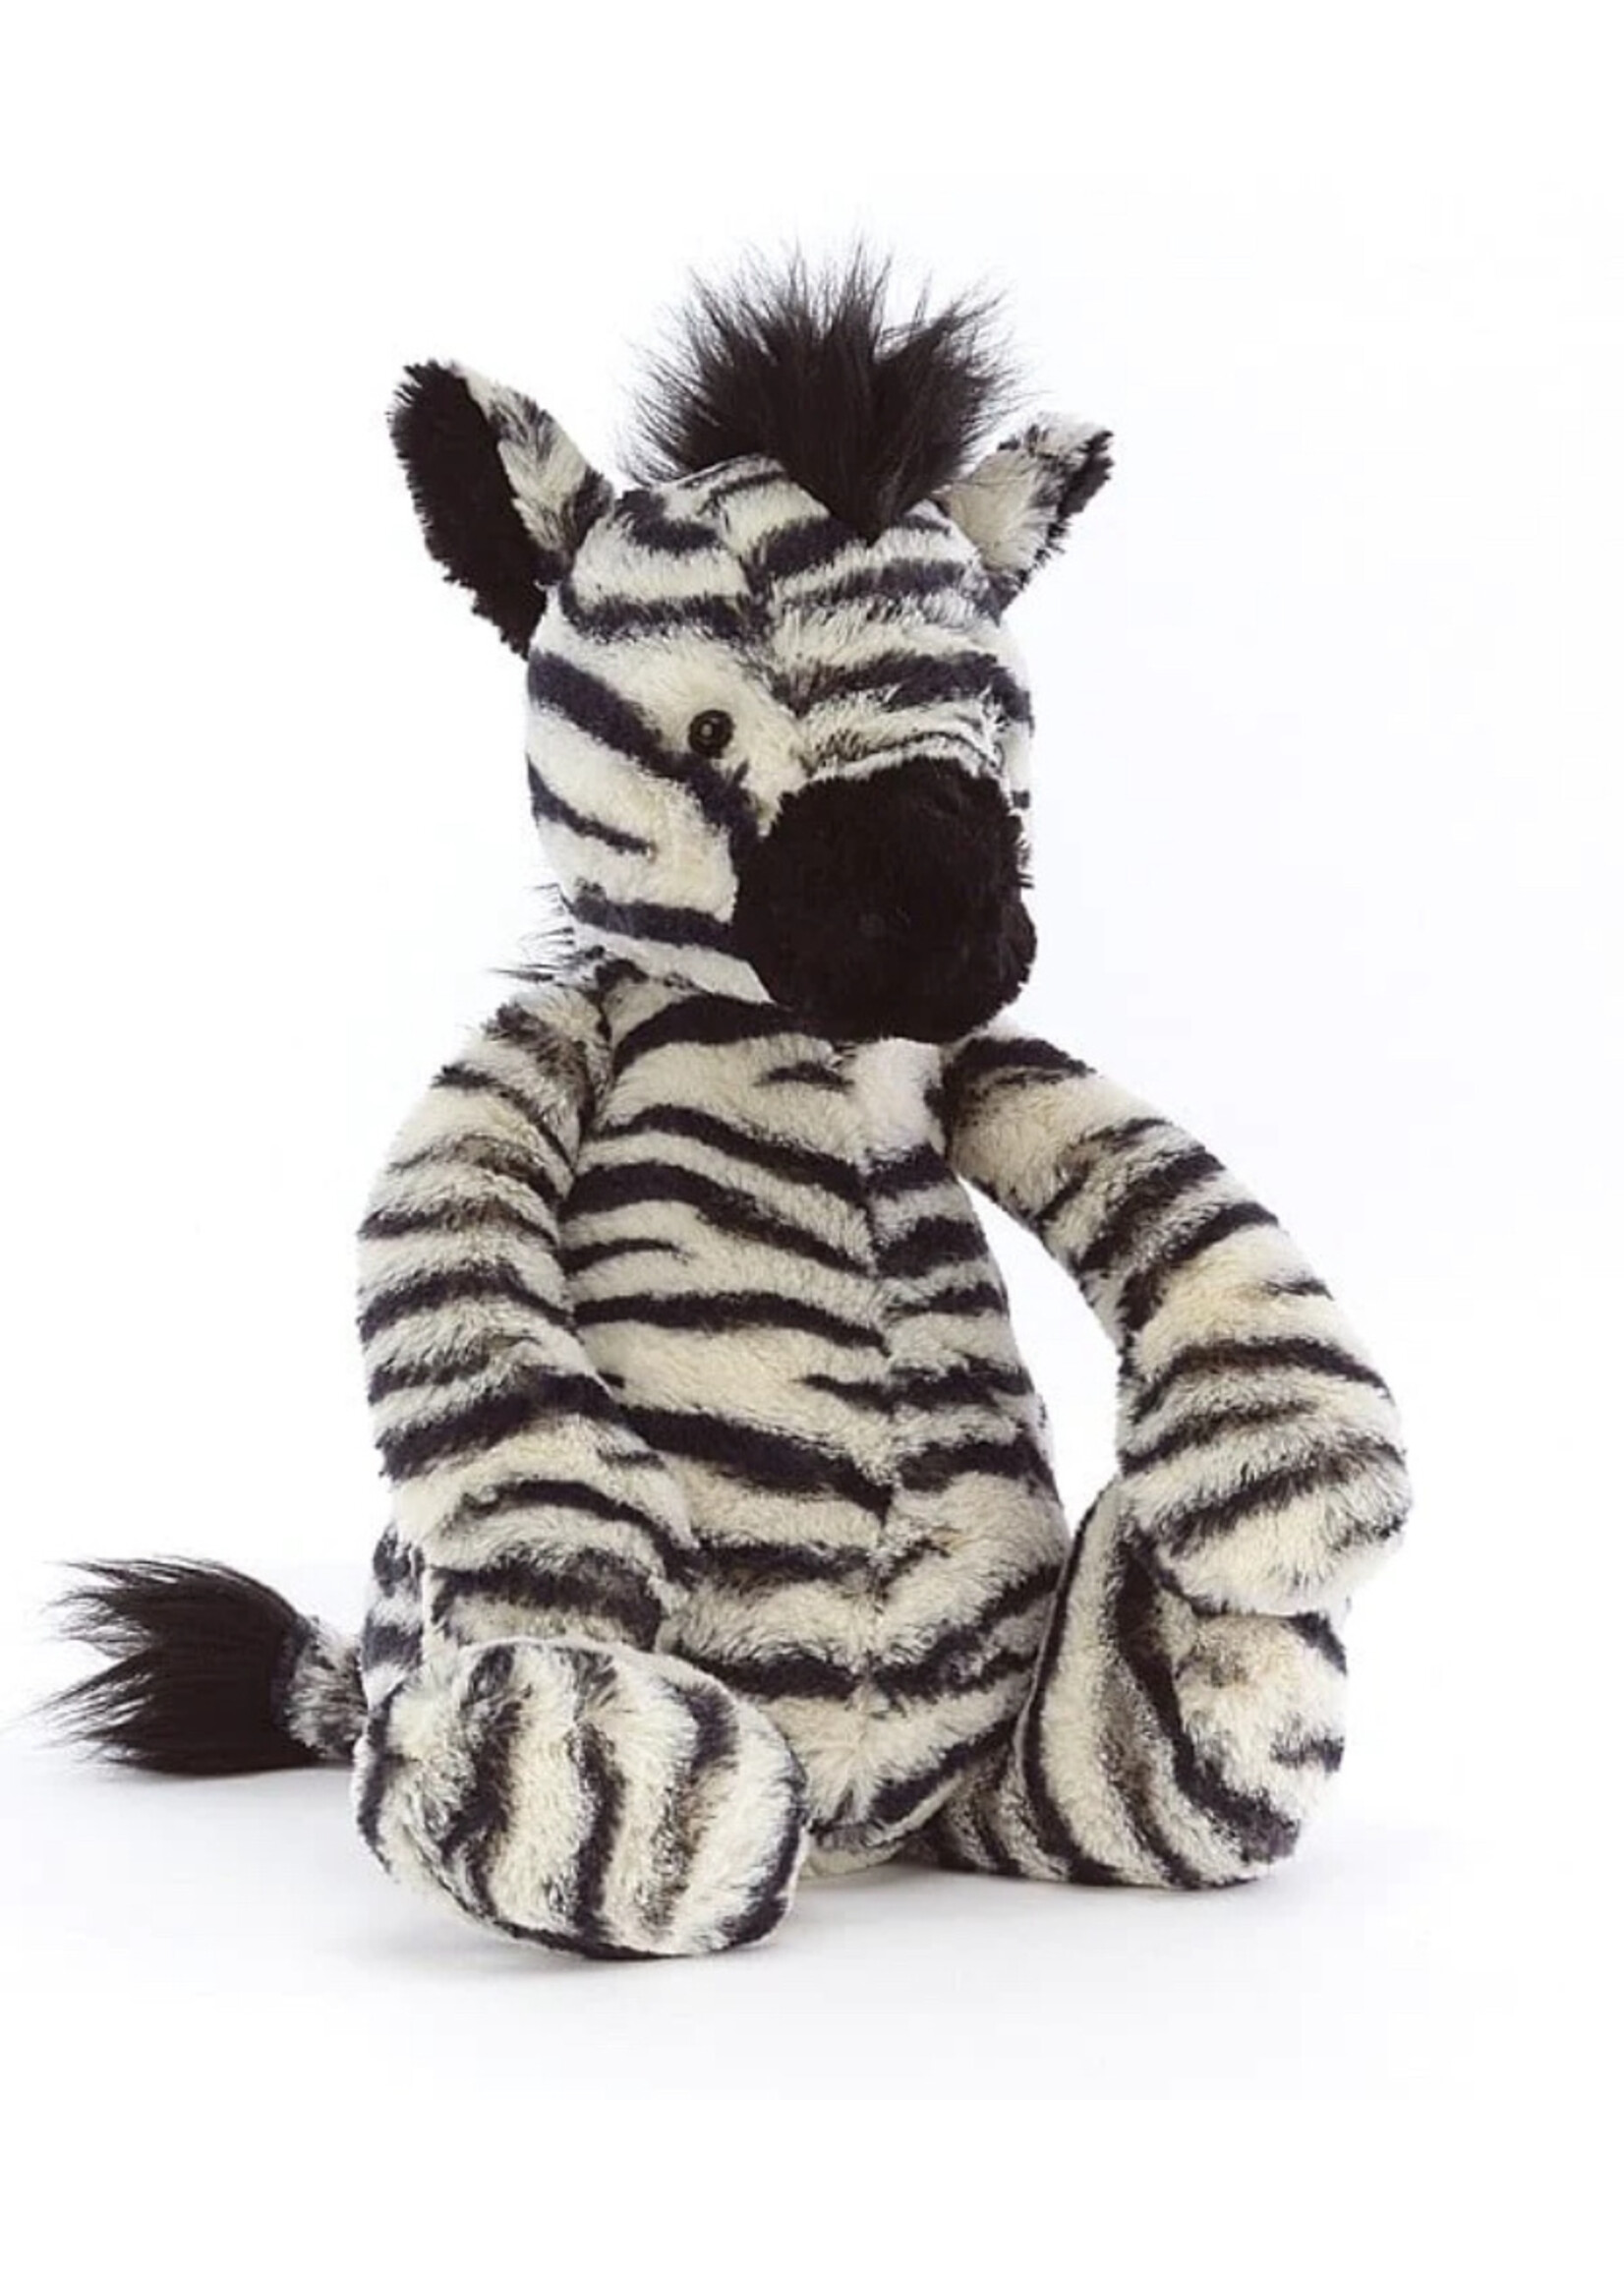 Jellycat Bashful Zebra